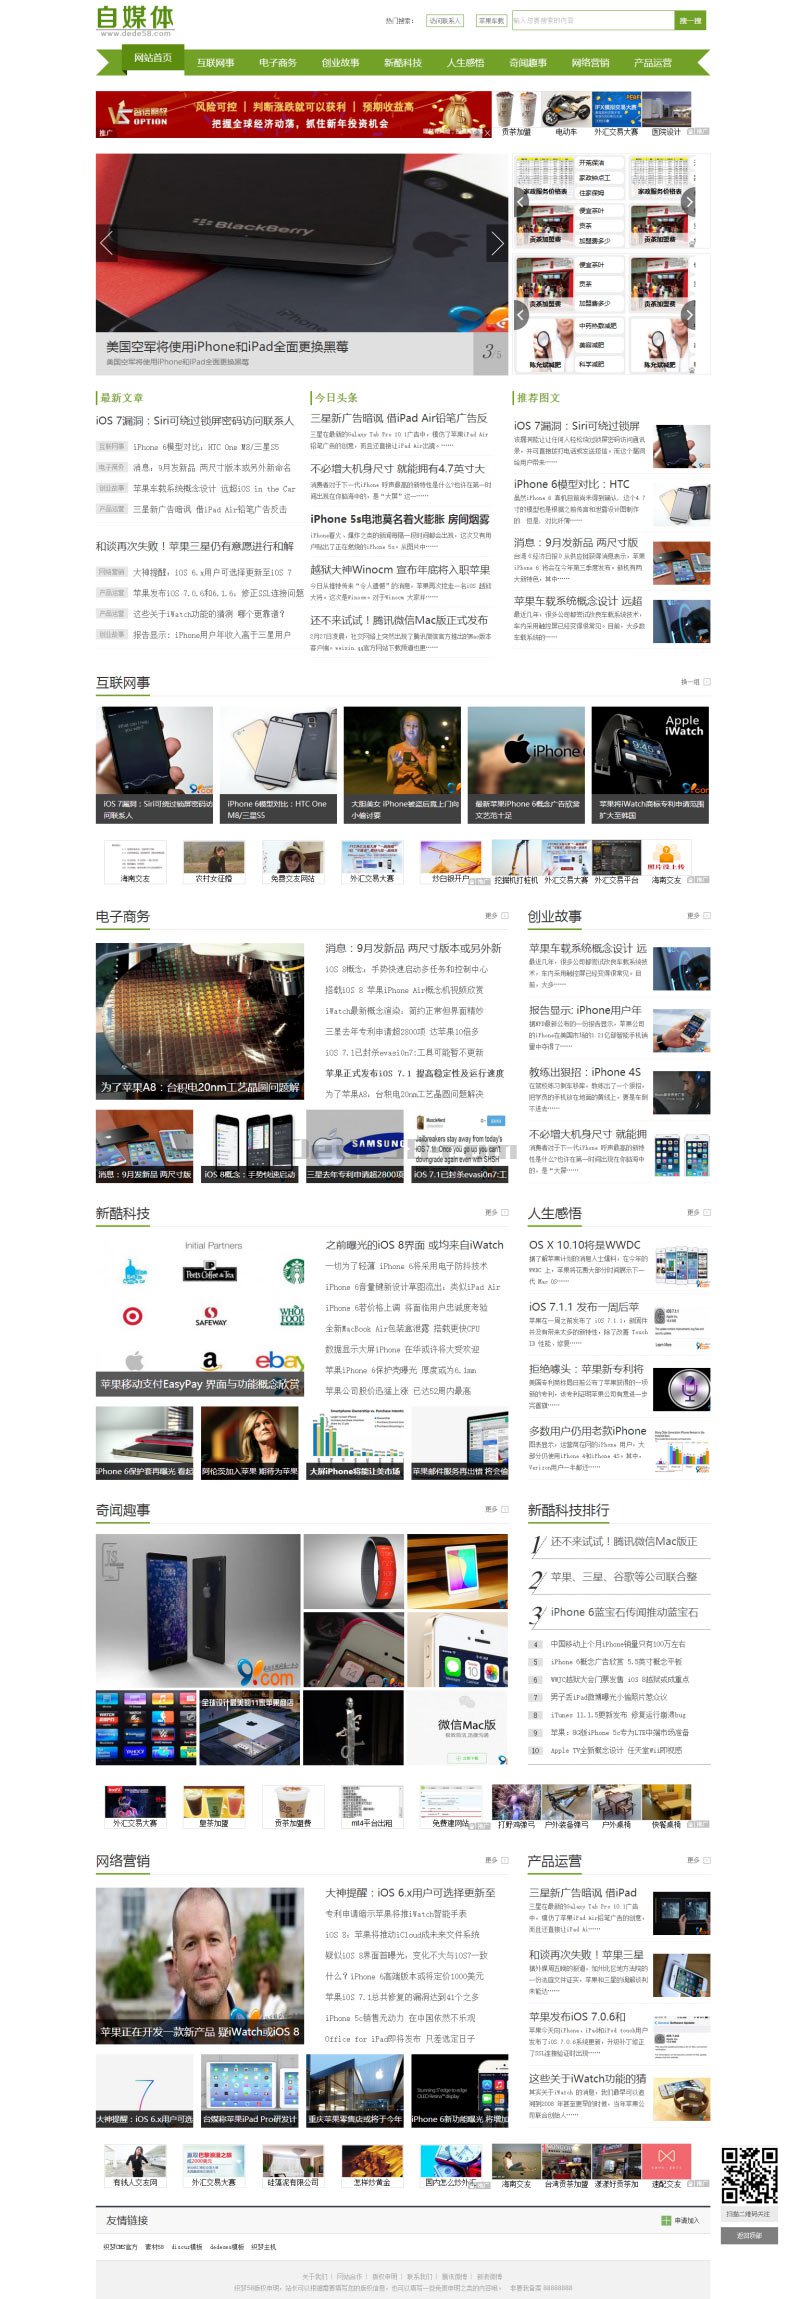 宽屏绿色新闻资讯网站织梦模板 第1张